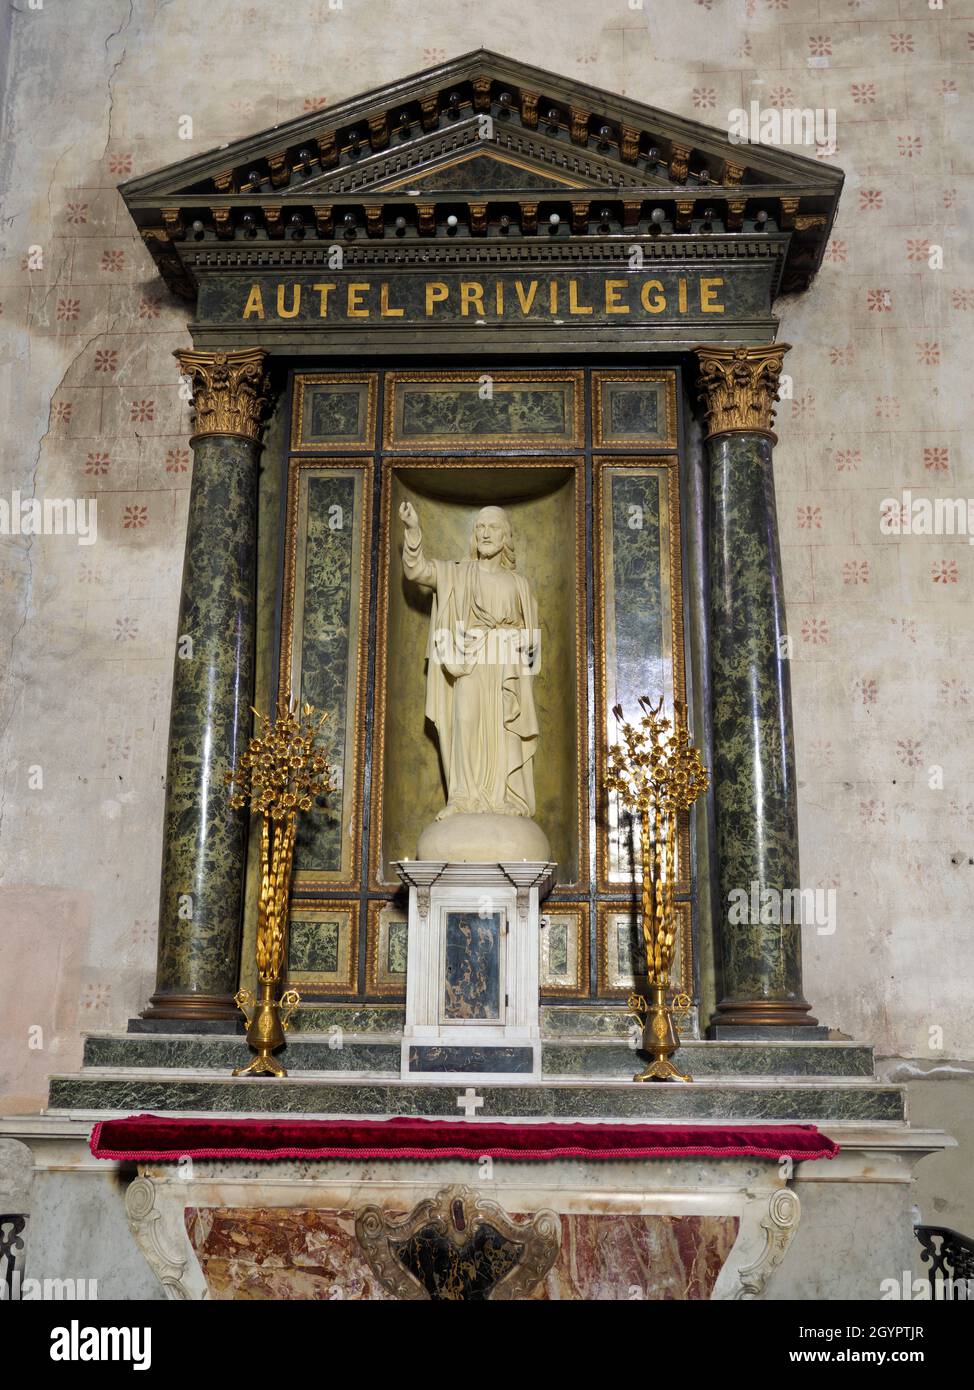 Altar privilegiado, Iglesia de Saint-Étienne de Maringues, Maringues, Auvernia, Francia. Foto de stock